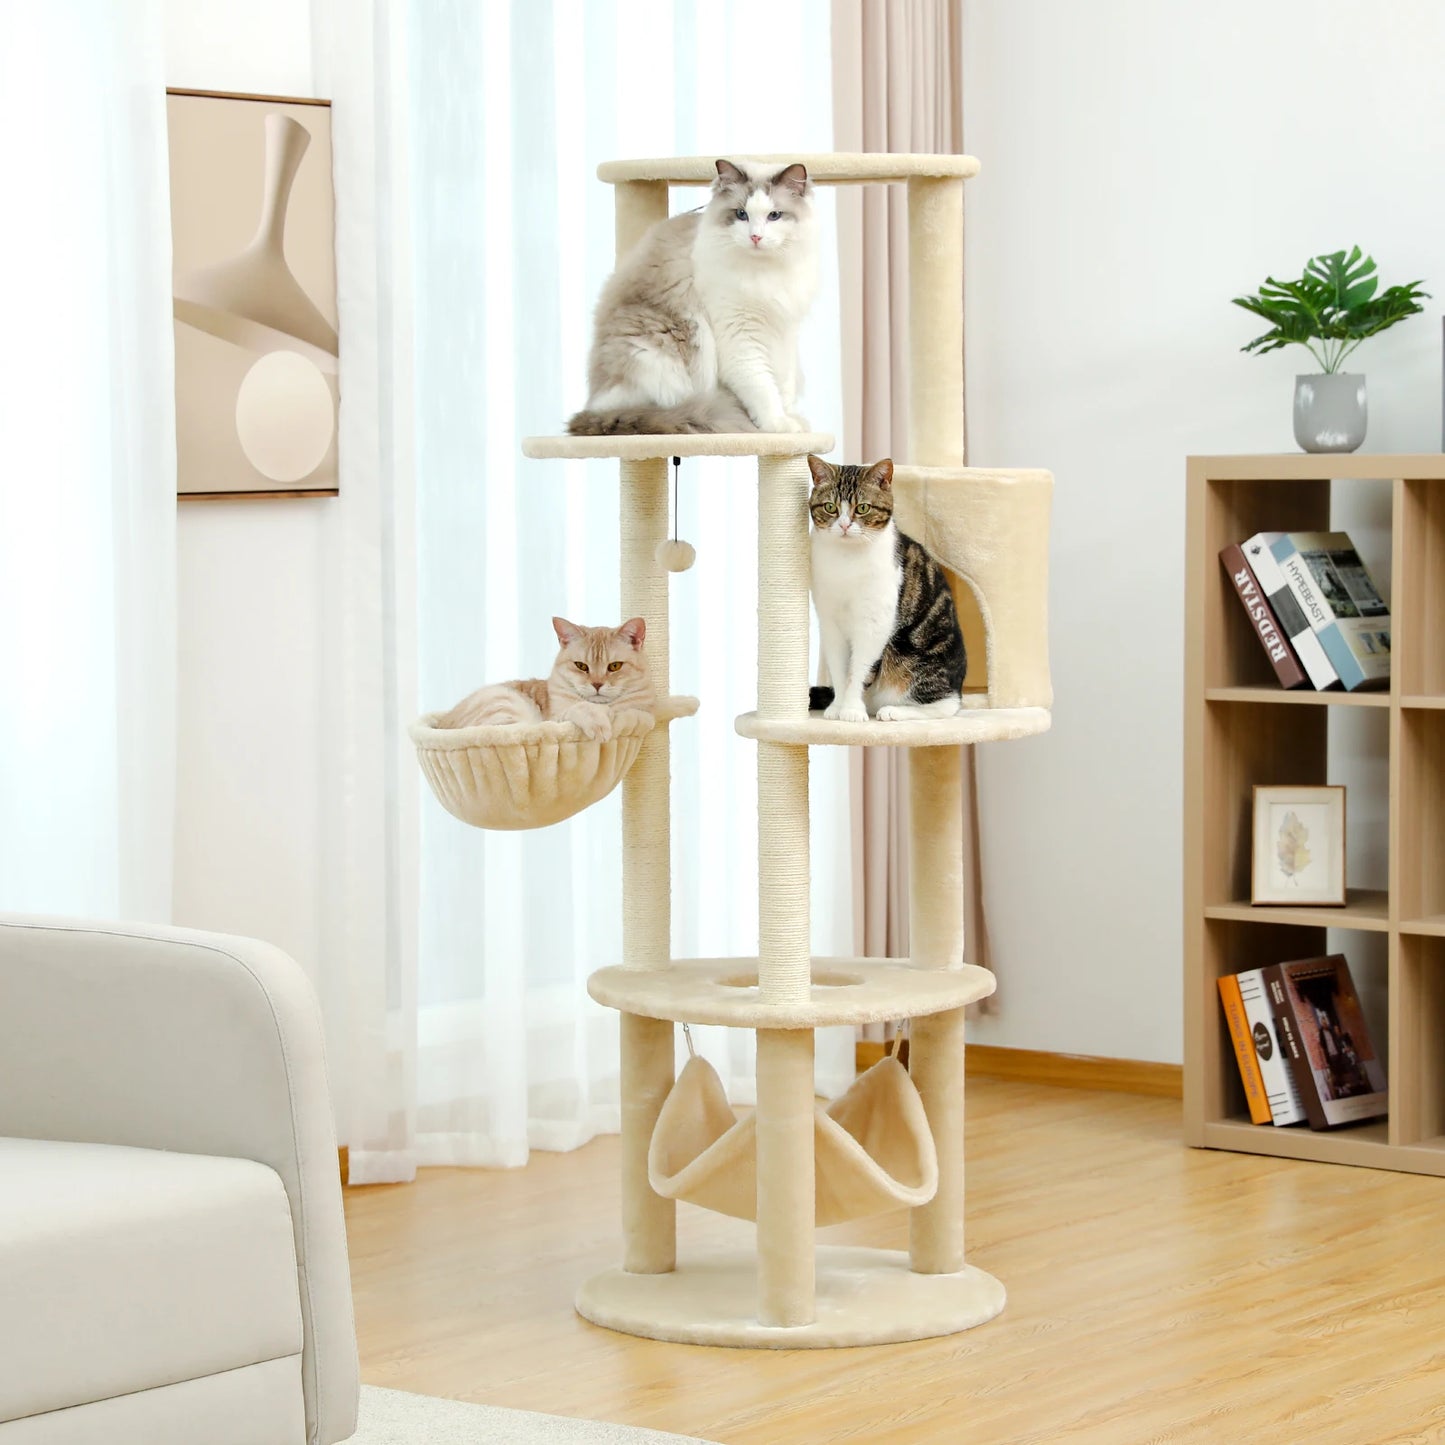 152cm Multi-Cat Luxury Tower - Spacious Multi-Level Cat Tree